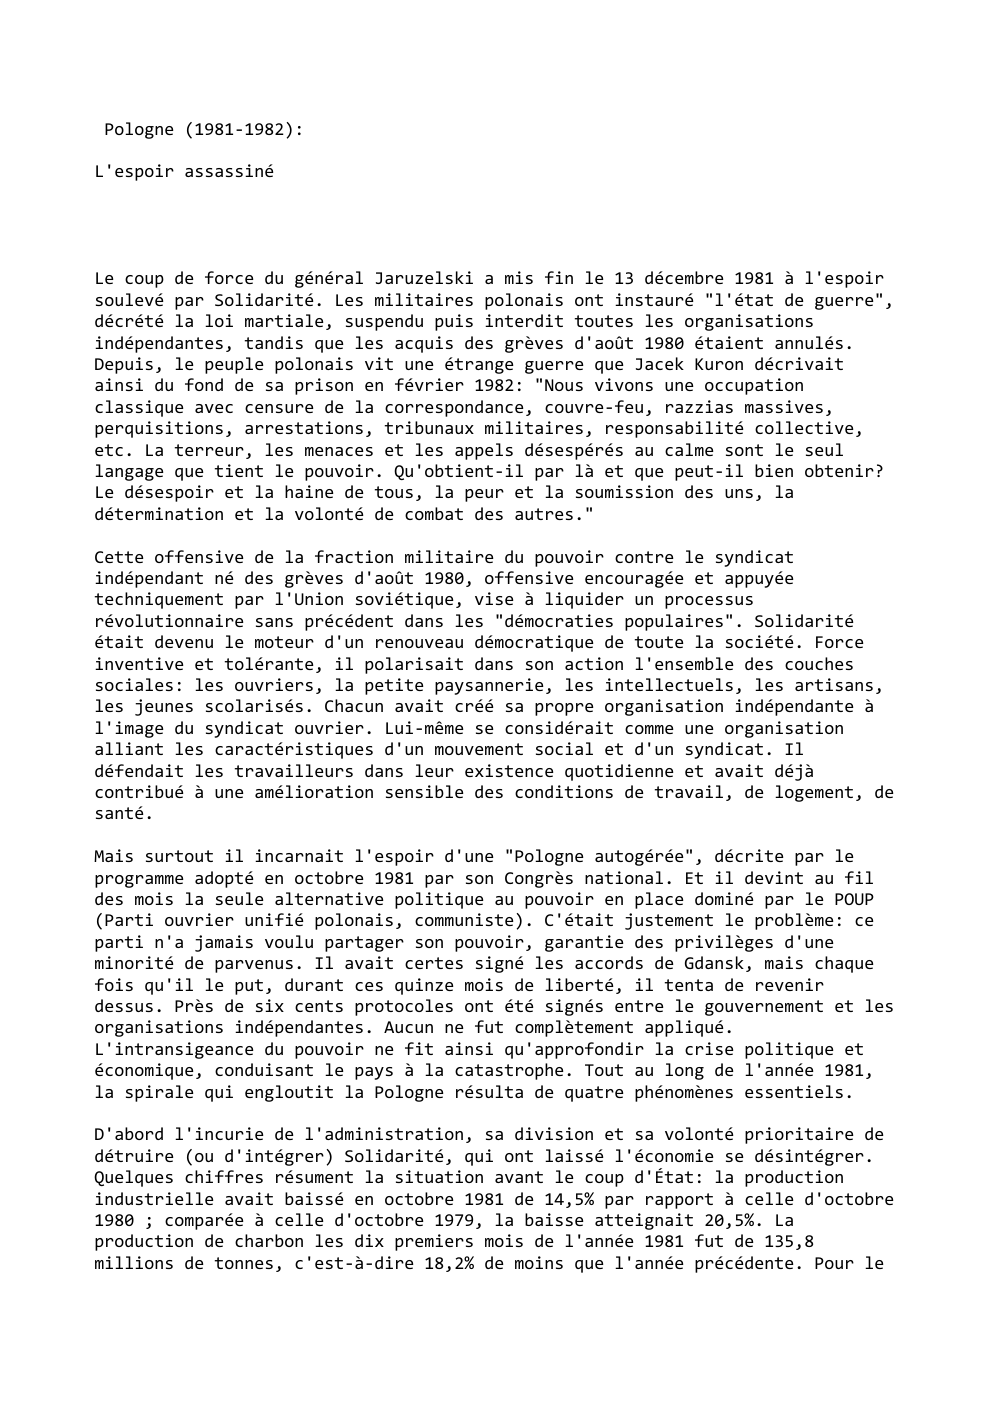 Prévisualisation du document Pologne (1981-1982):
L'espoir assassiné

Le coup de force du général Jaruzelski a mis fin le 13 décembre 1981 à l'espoir...